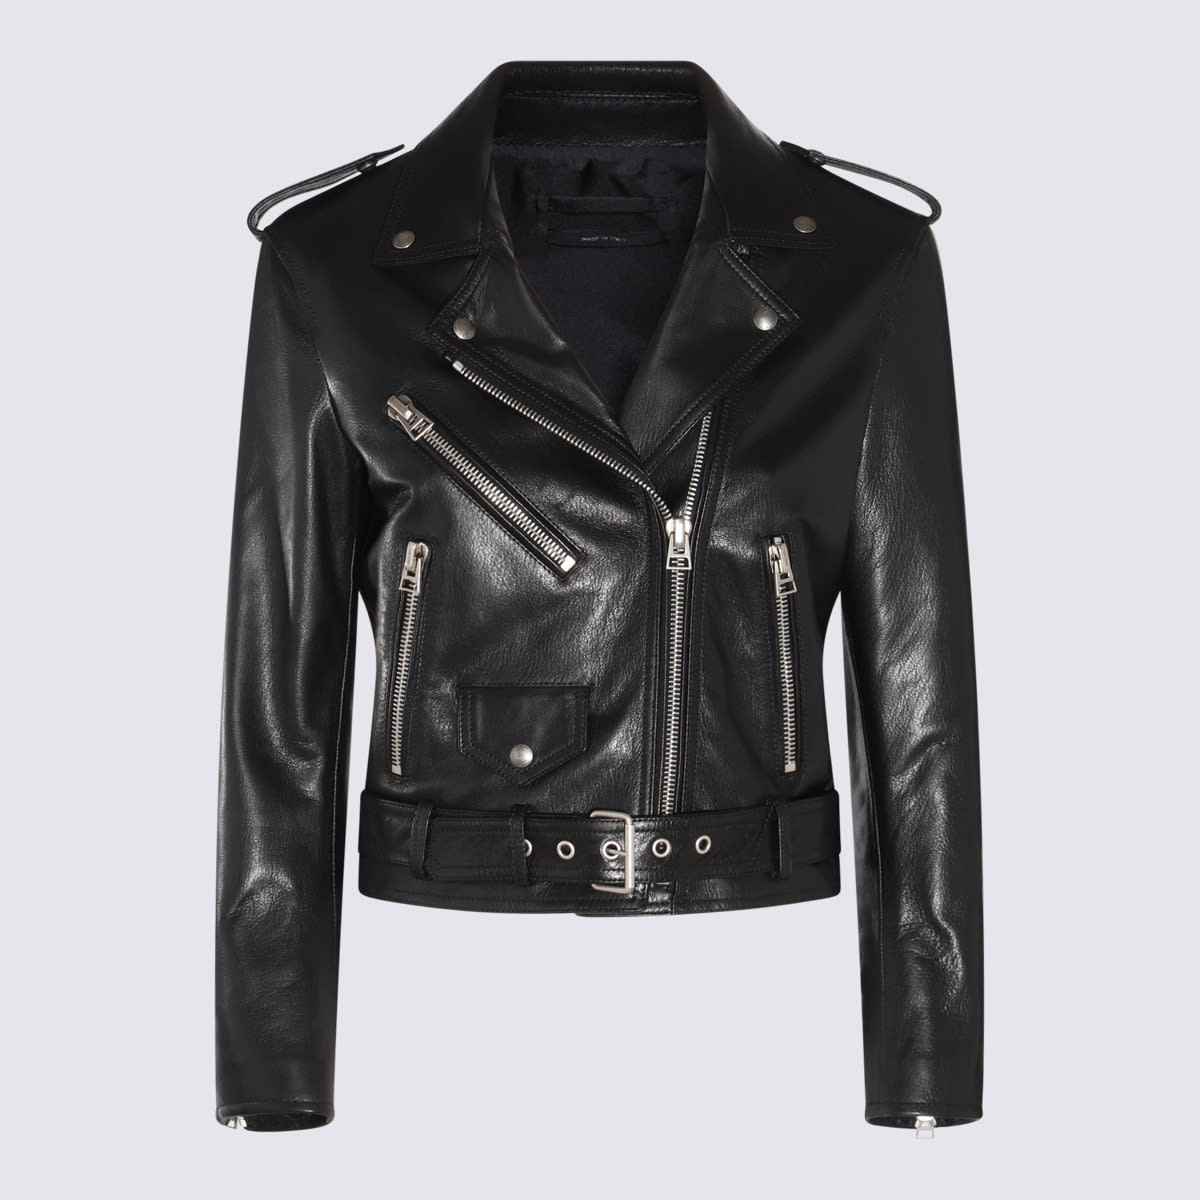 Tom Ford Black Leather Jacket